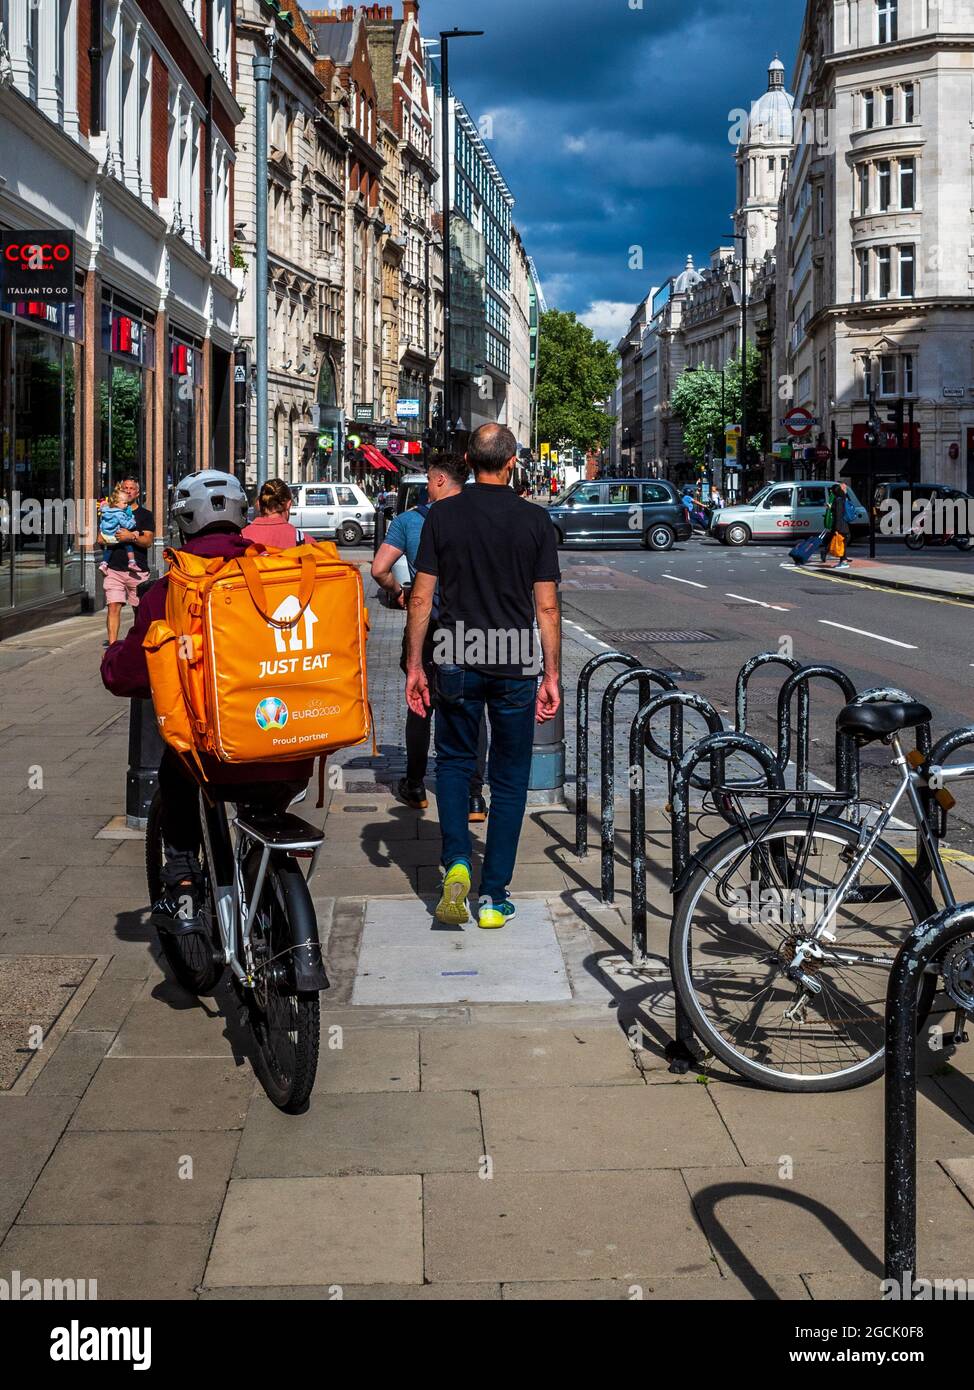 Essen Sie einfach Food Delivery Courier auf einem Bürgersteig im Zentrum von London. Essen Sie Einfach Bike Food Delivery Courier. Stockfoto